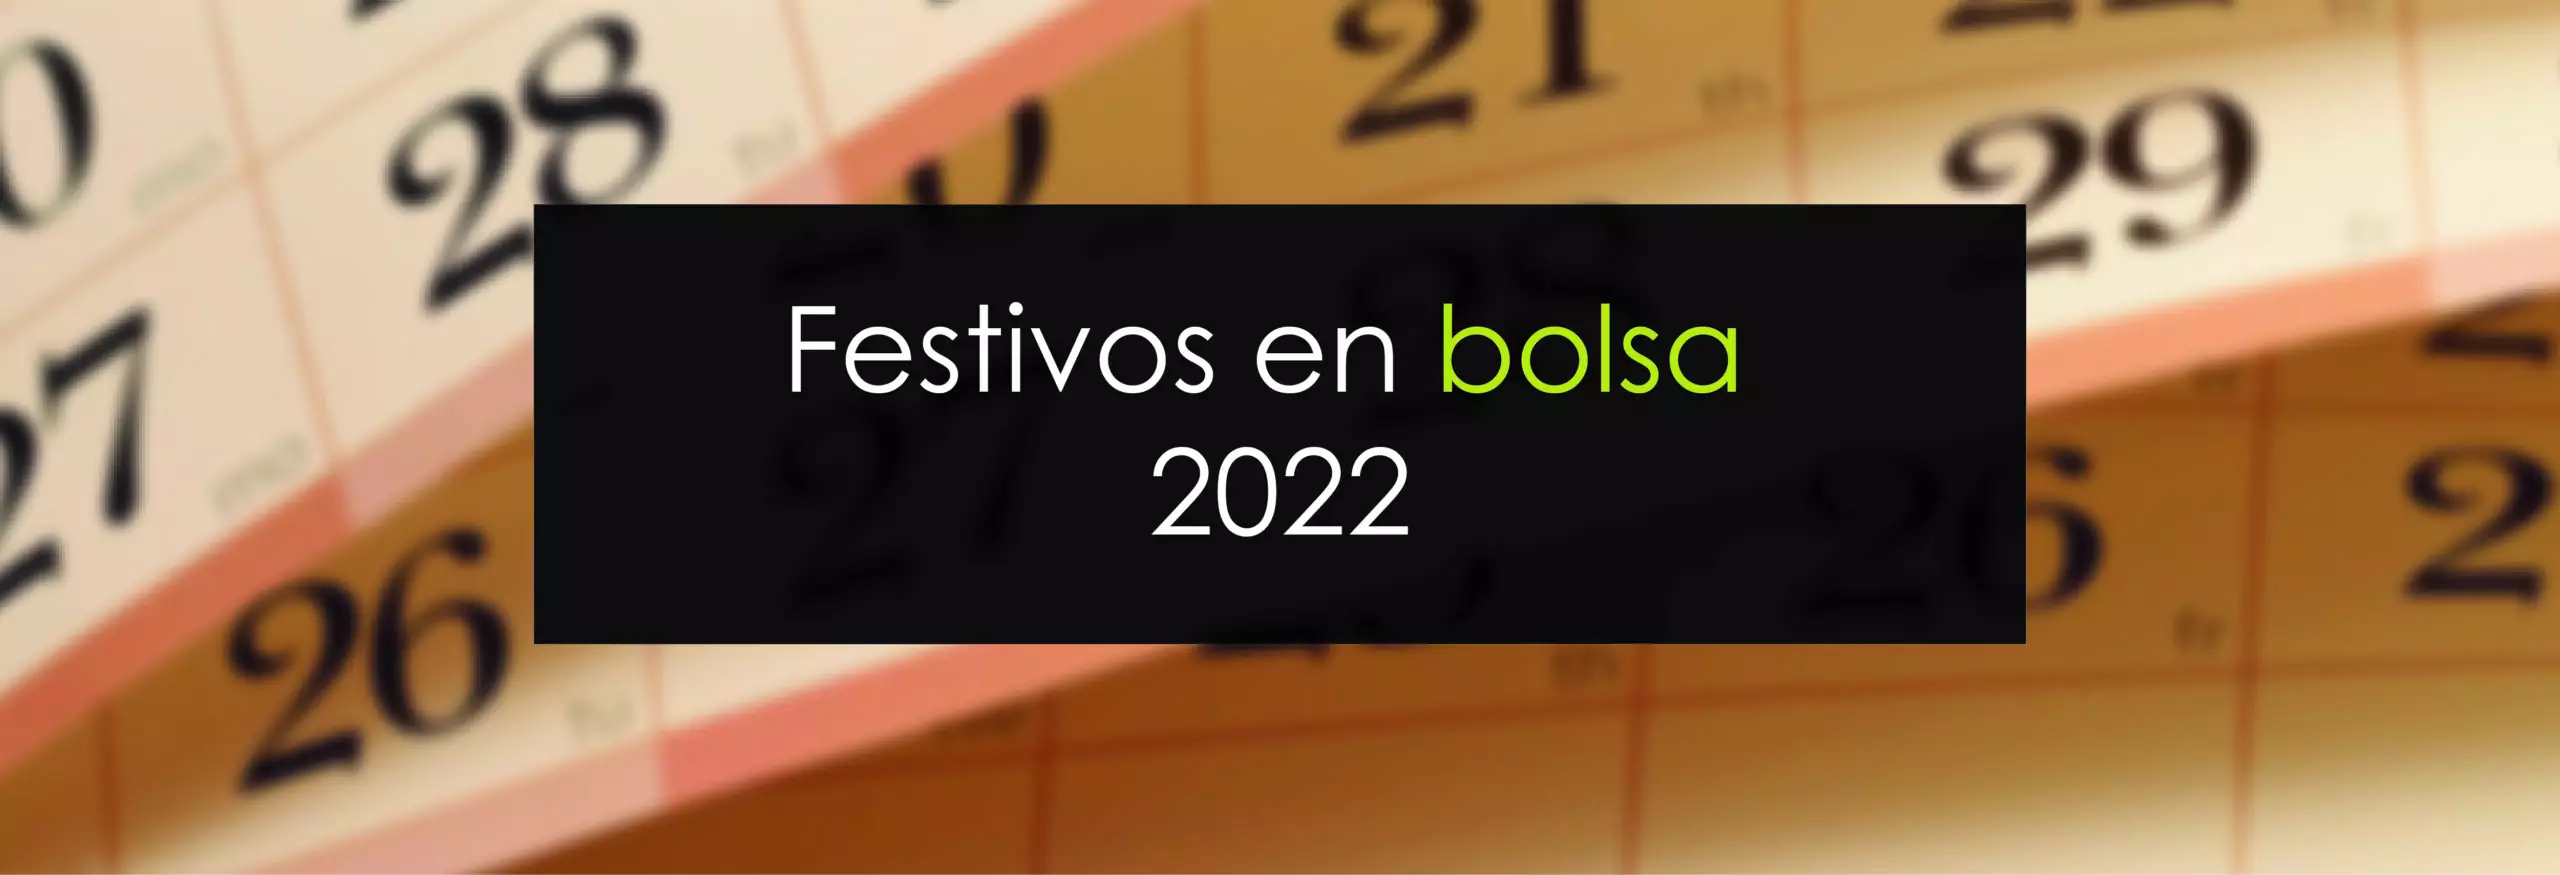 Festivos en bolsa en 2022 - Novatos Trading